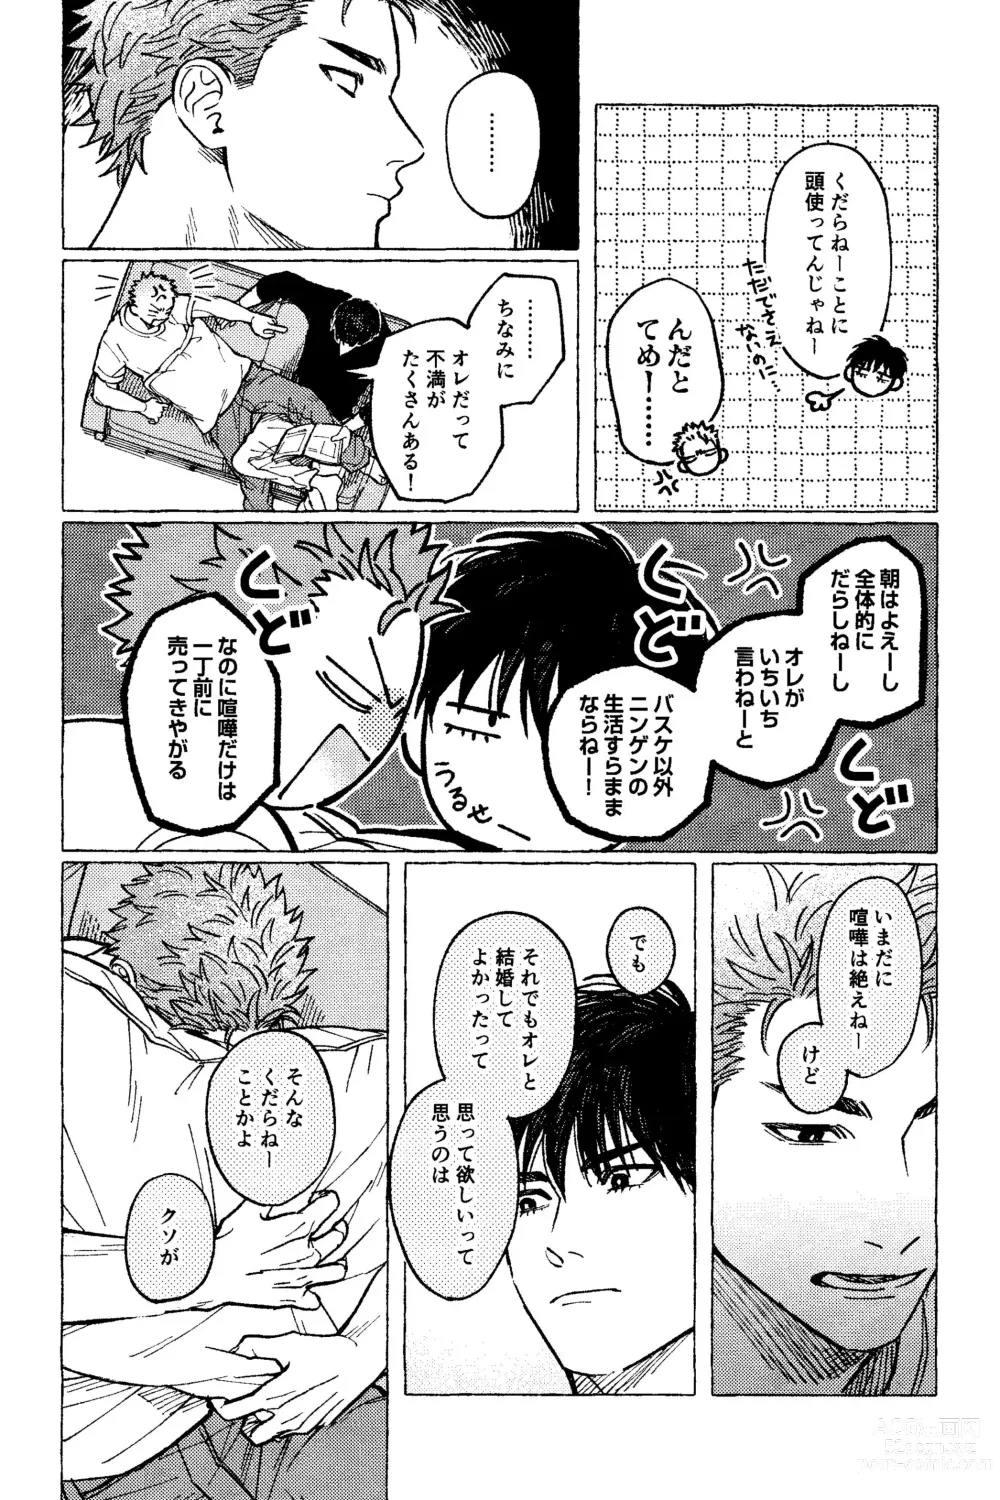 Page 31 of doujinshi Motto Motto Aishitai